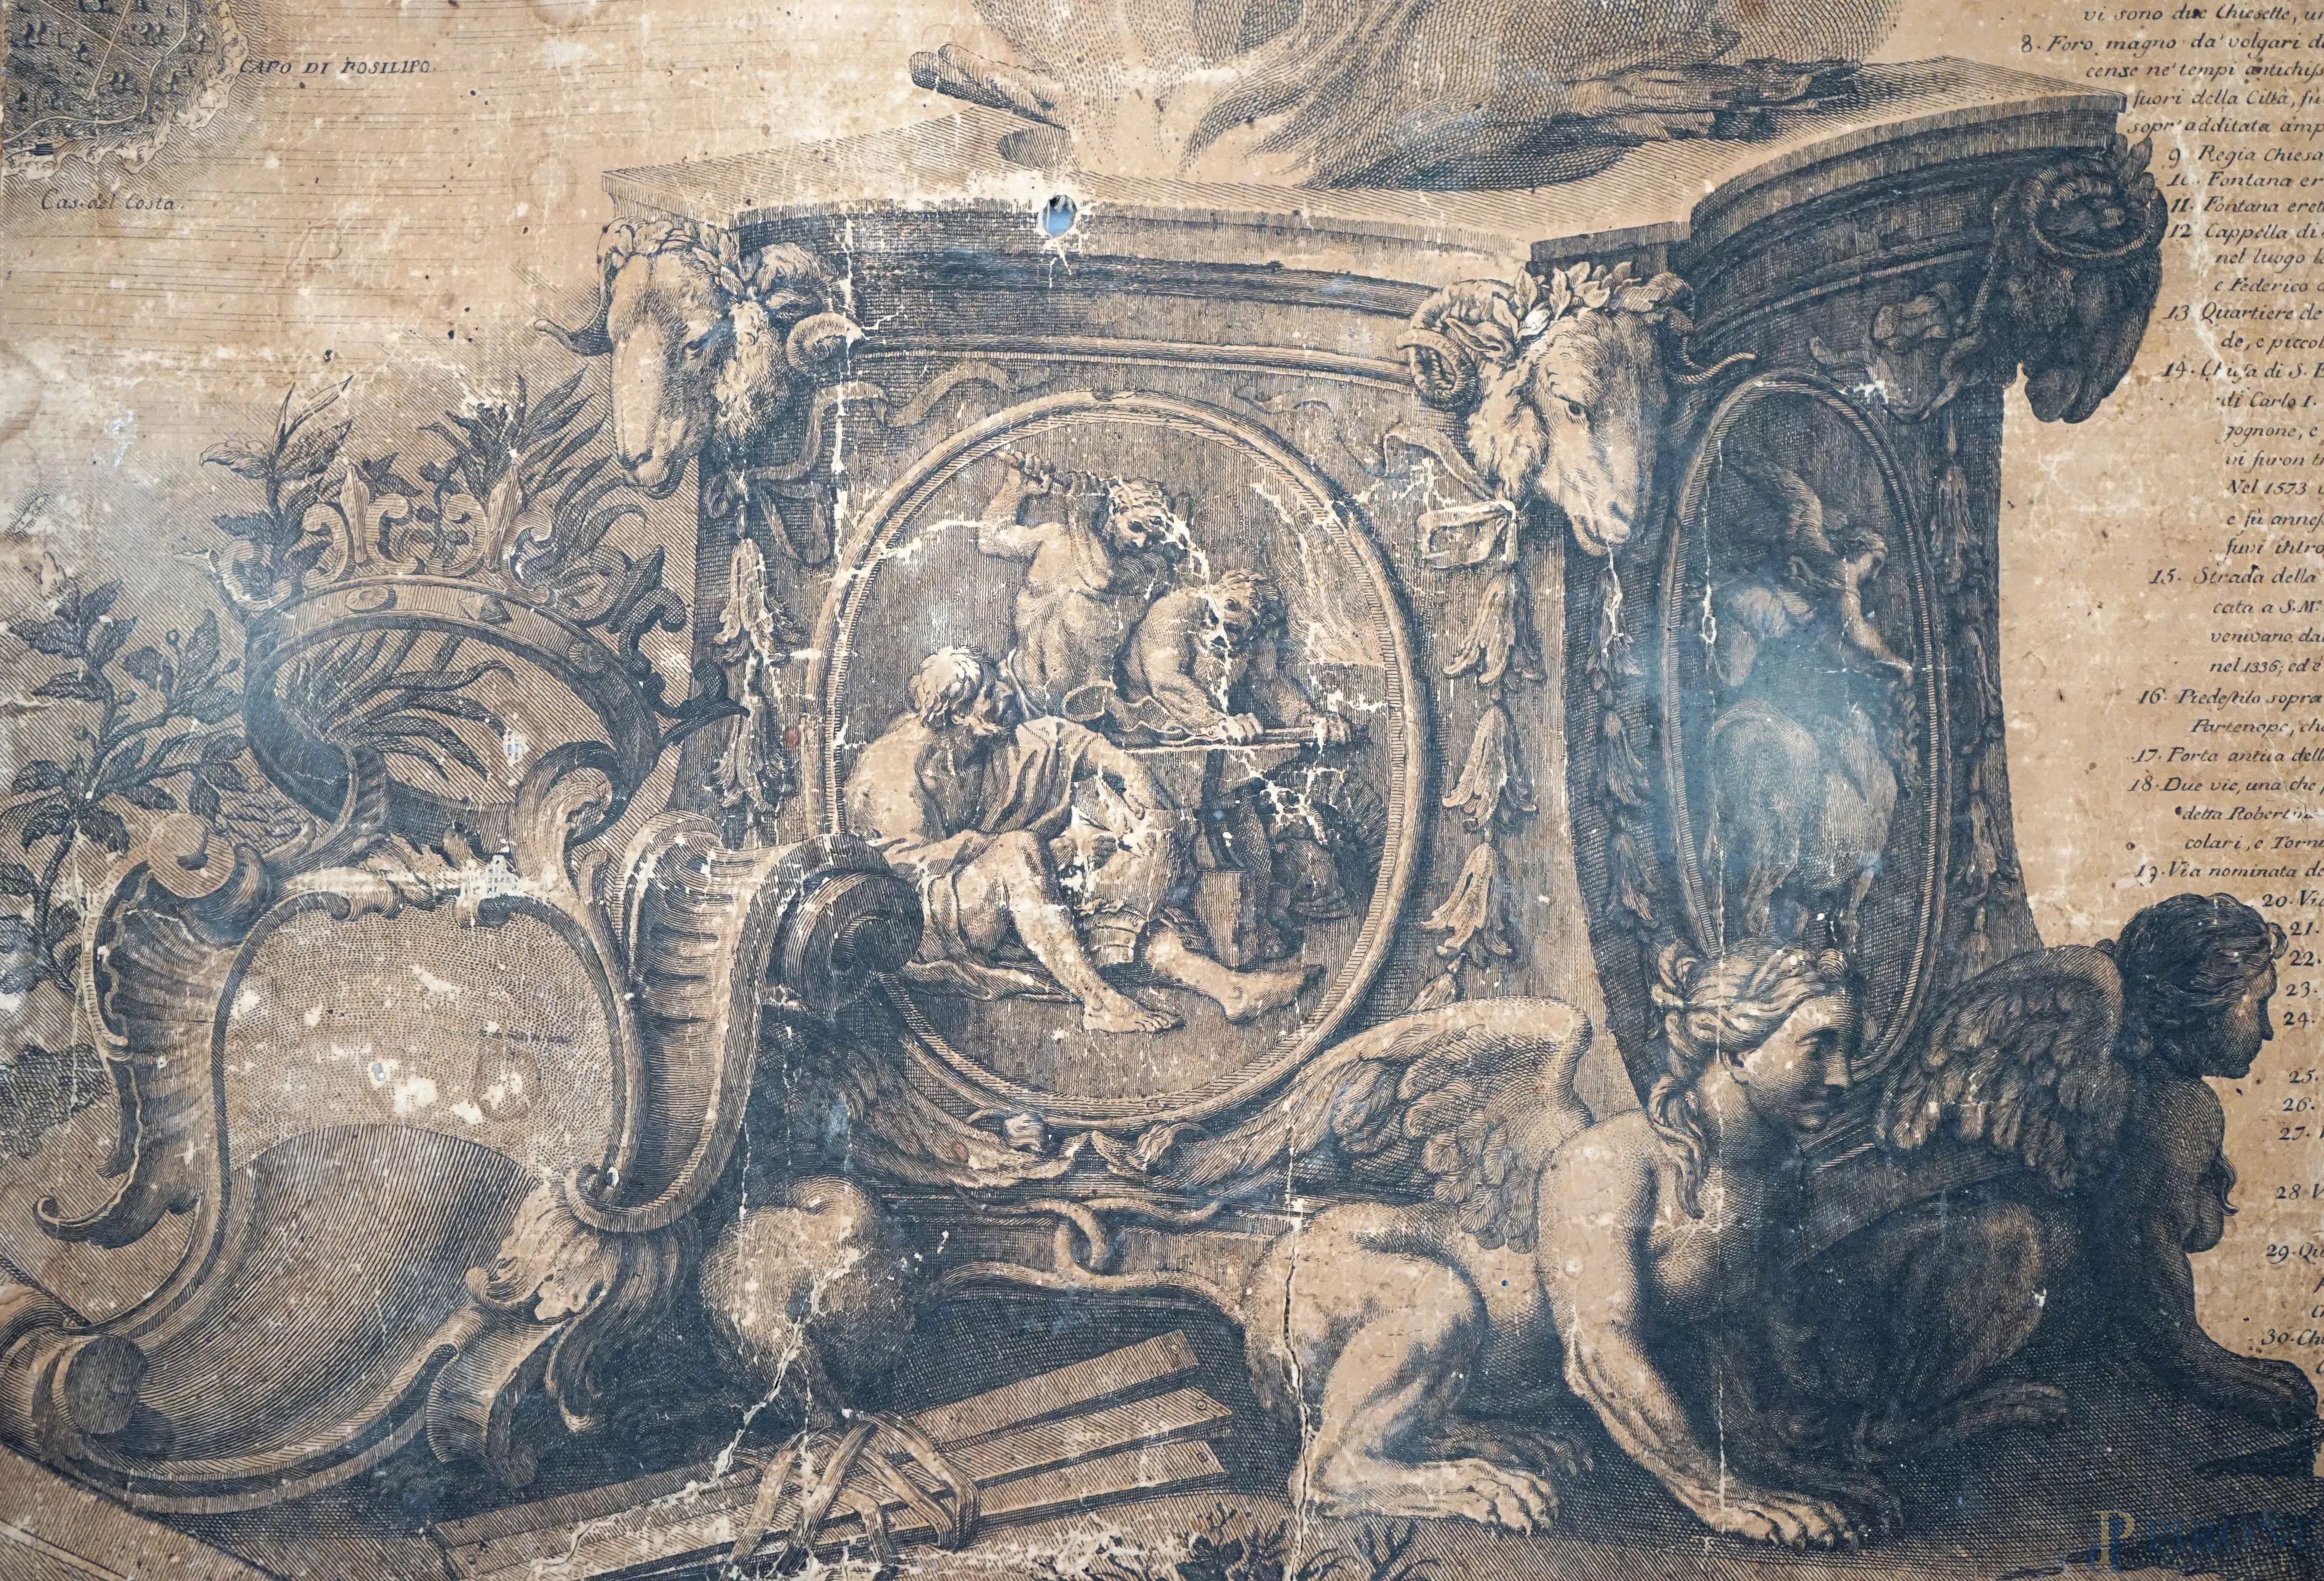 La cartapesta di Tudisco - Napoli Artigianato Artistico